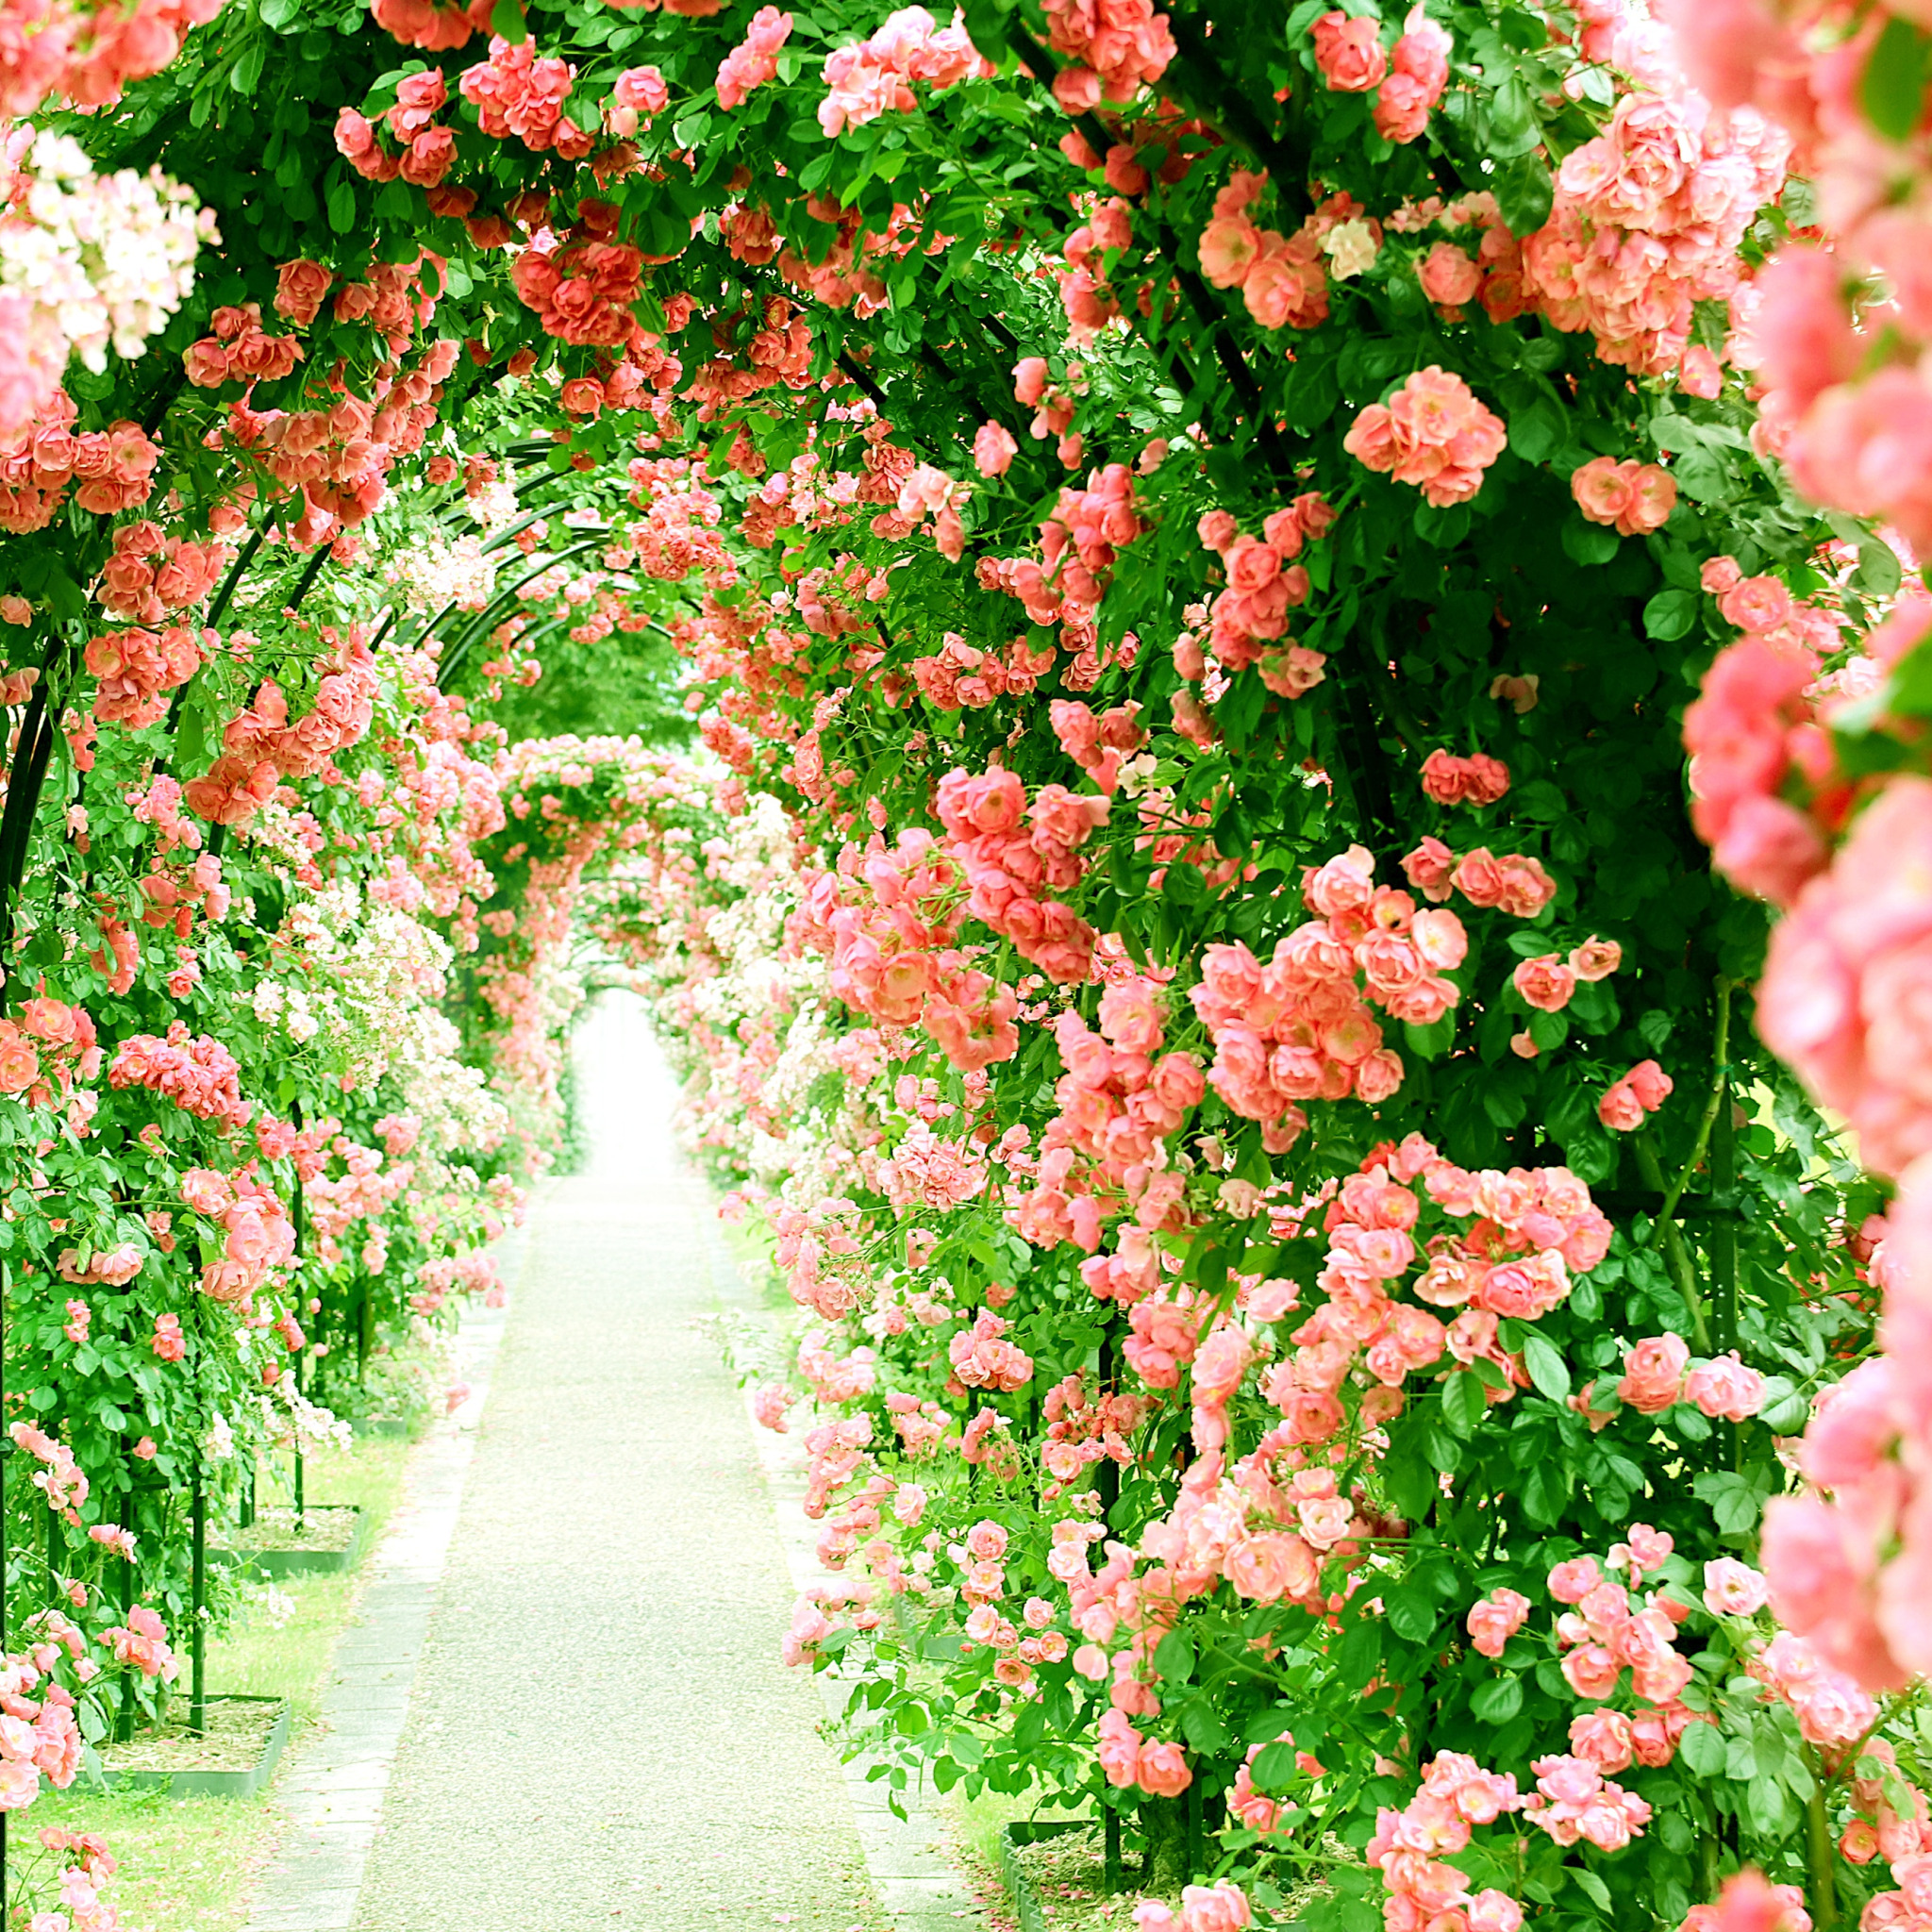 Засажу всю аллею. Цветочная арка. Цветочный сад. Аллея с цветами. Арка из роз в саду.